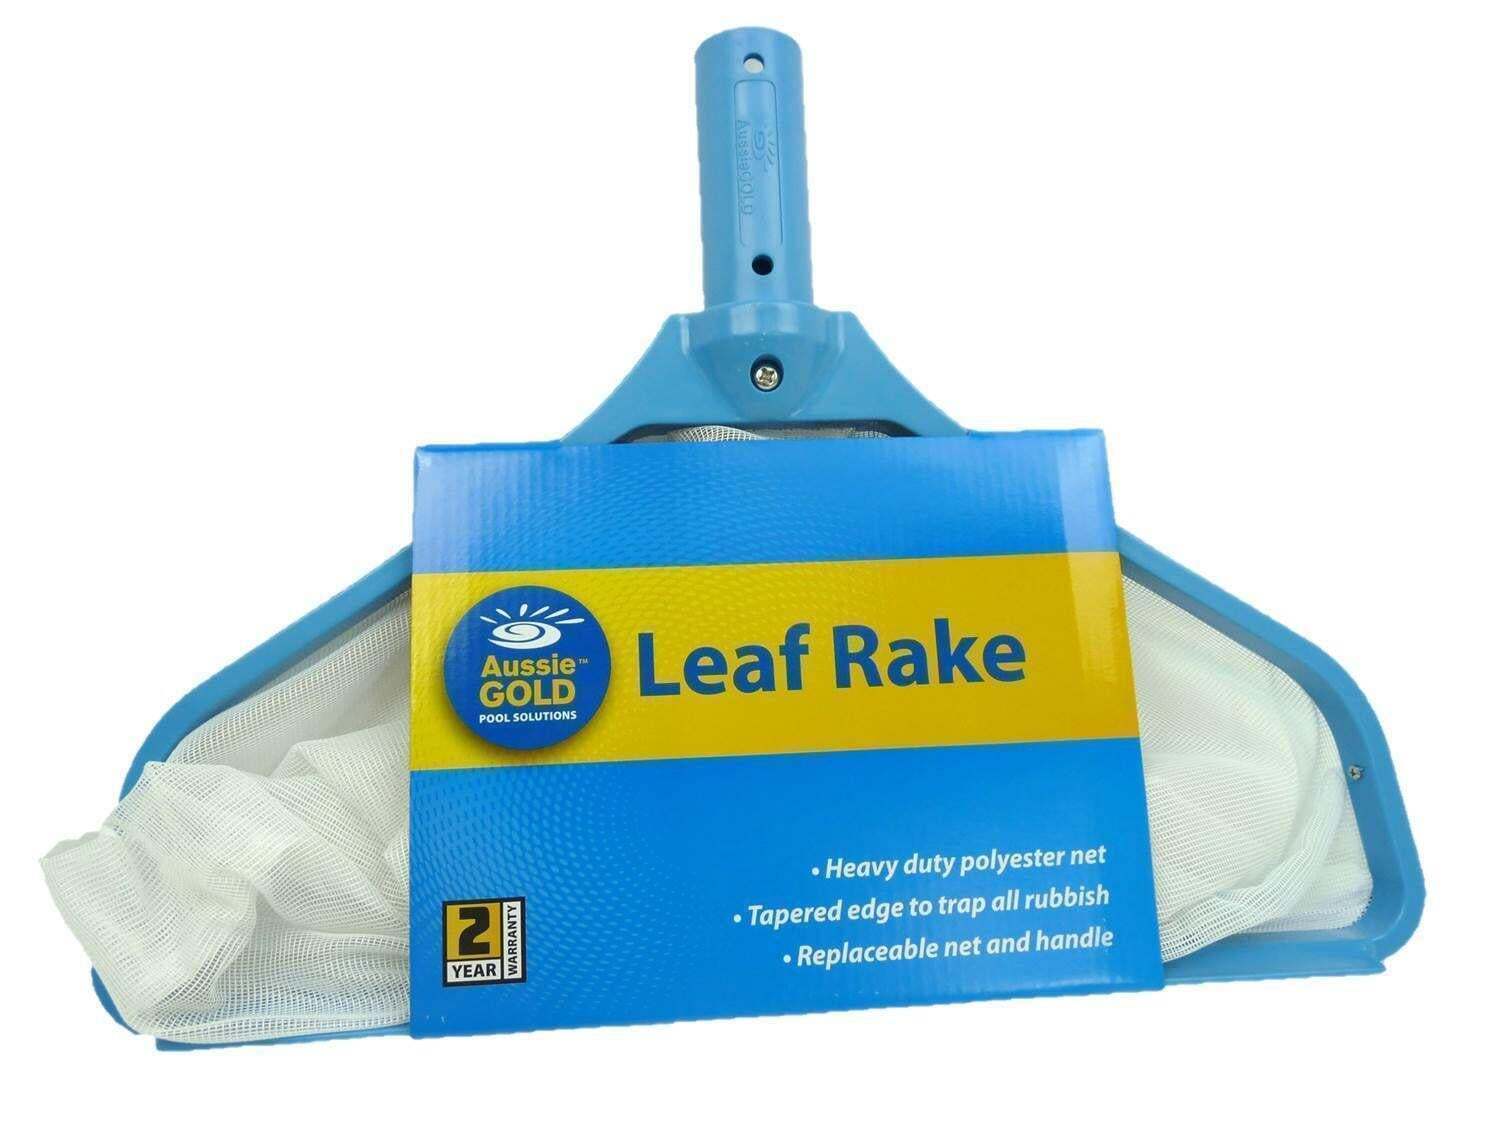 Leaf Rake